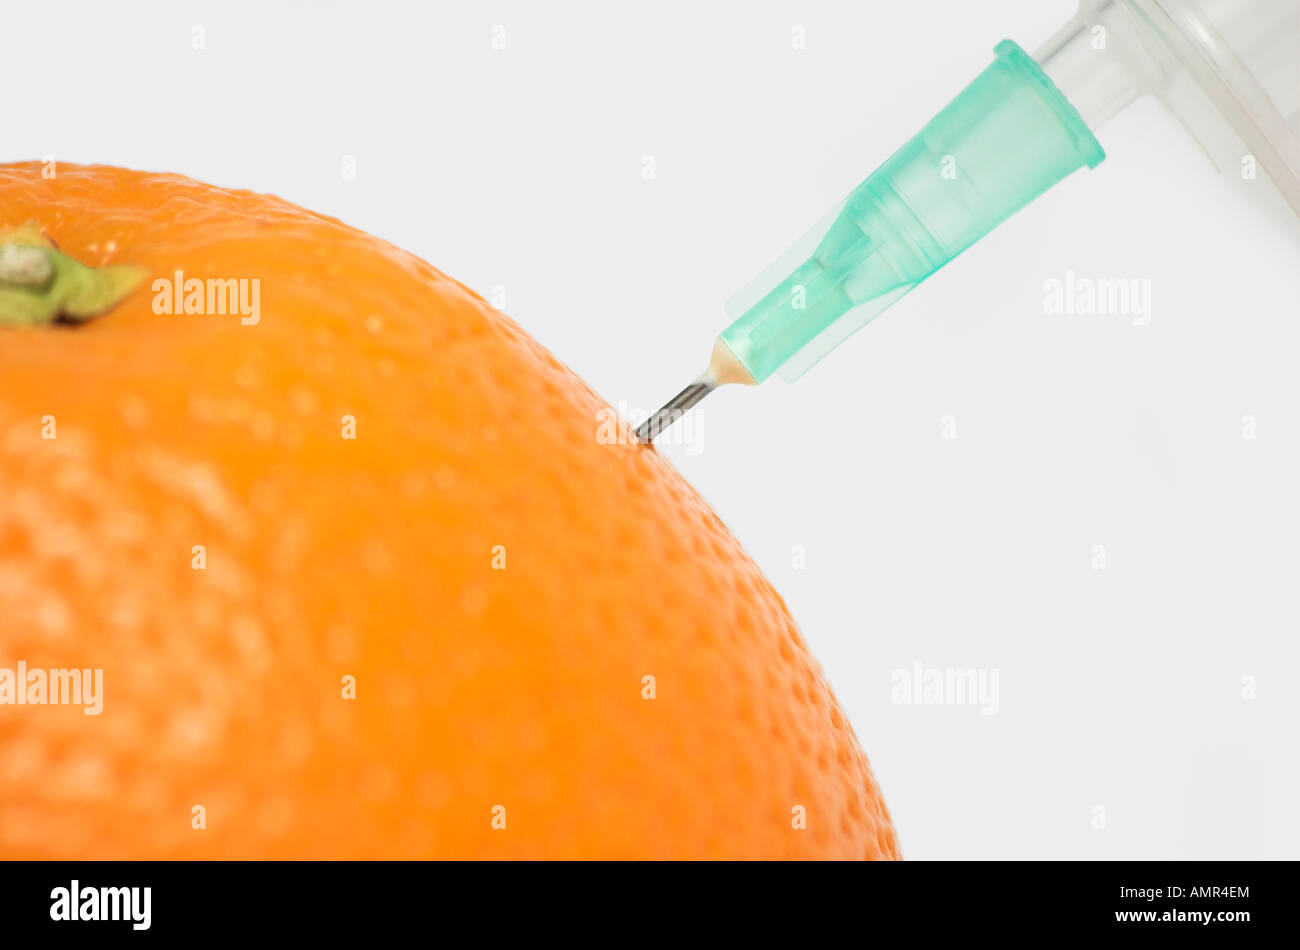 L'injection seringue close up orange Banque D'Images